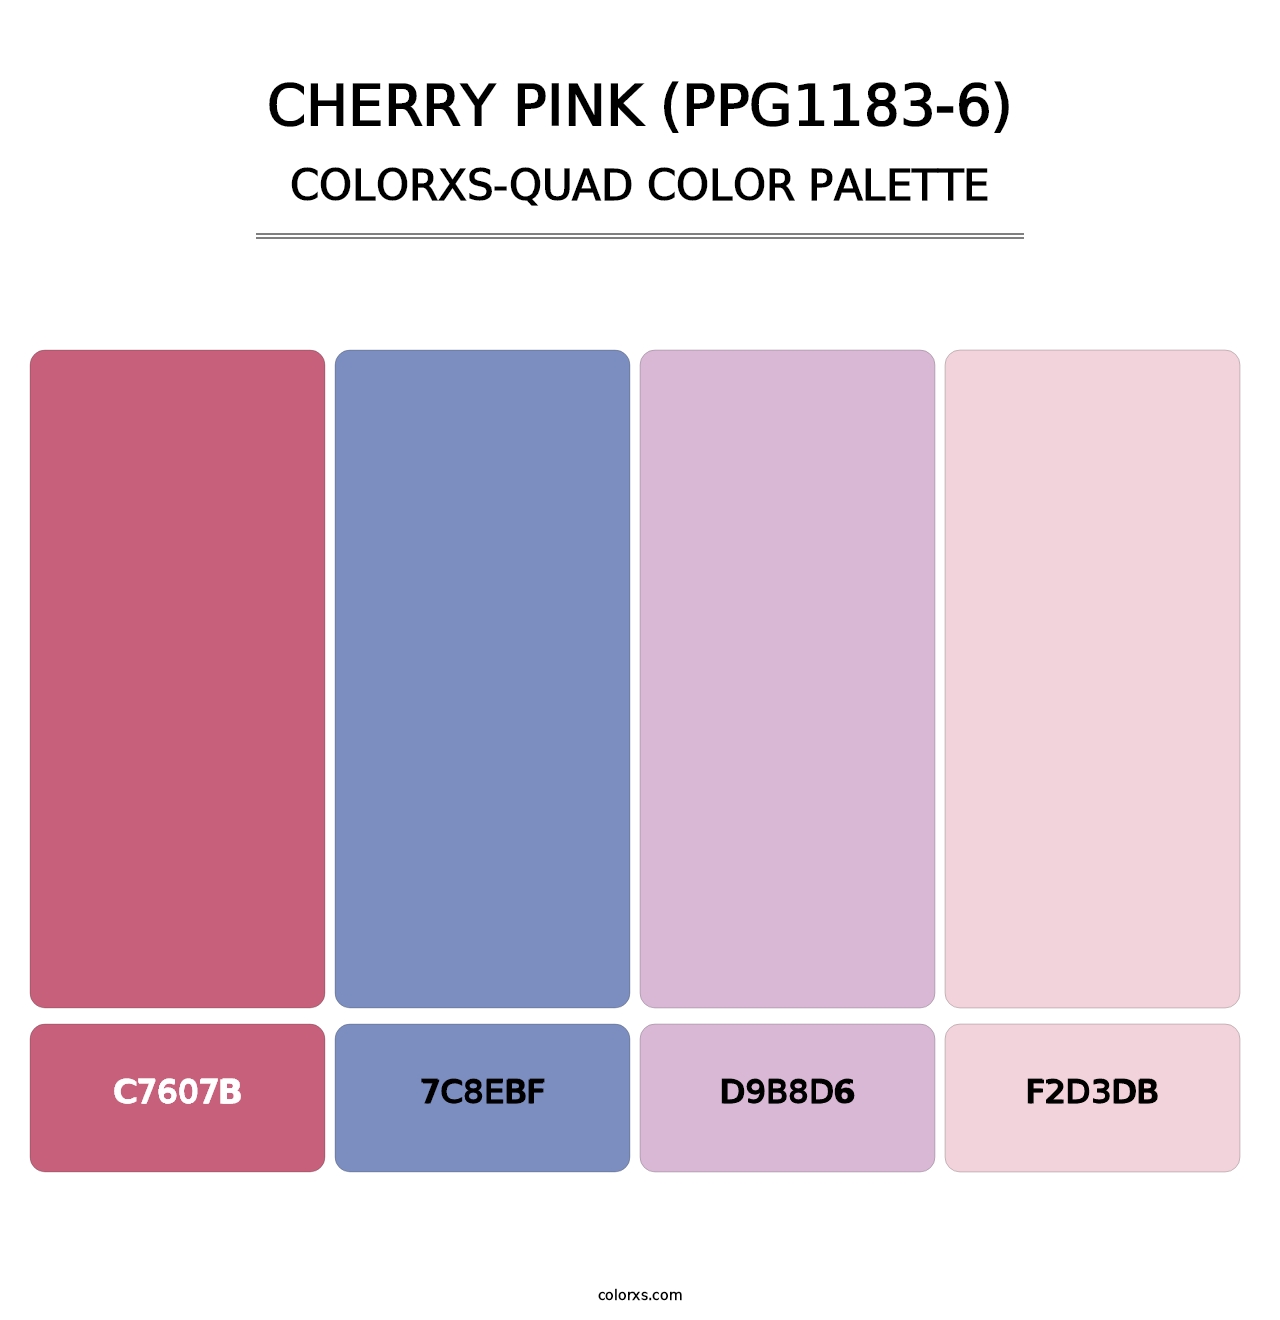 Cherry Pink (PPG1183-6) - Colorxs Quad Palette